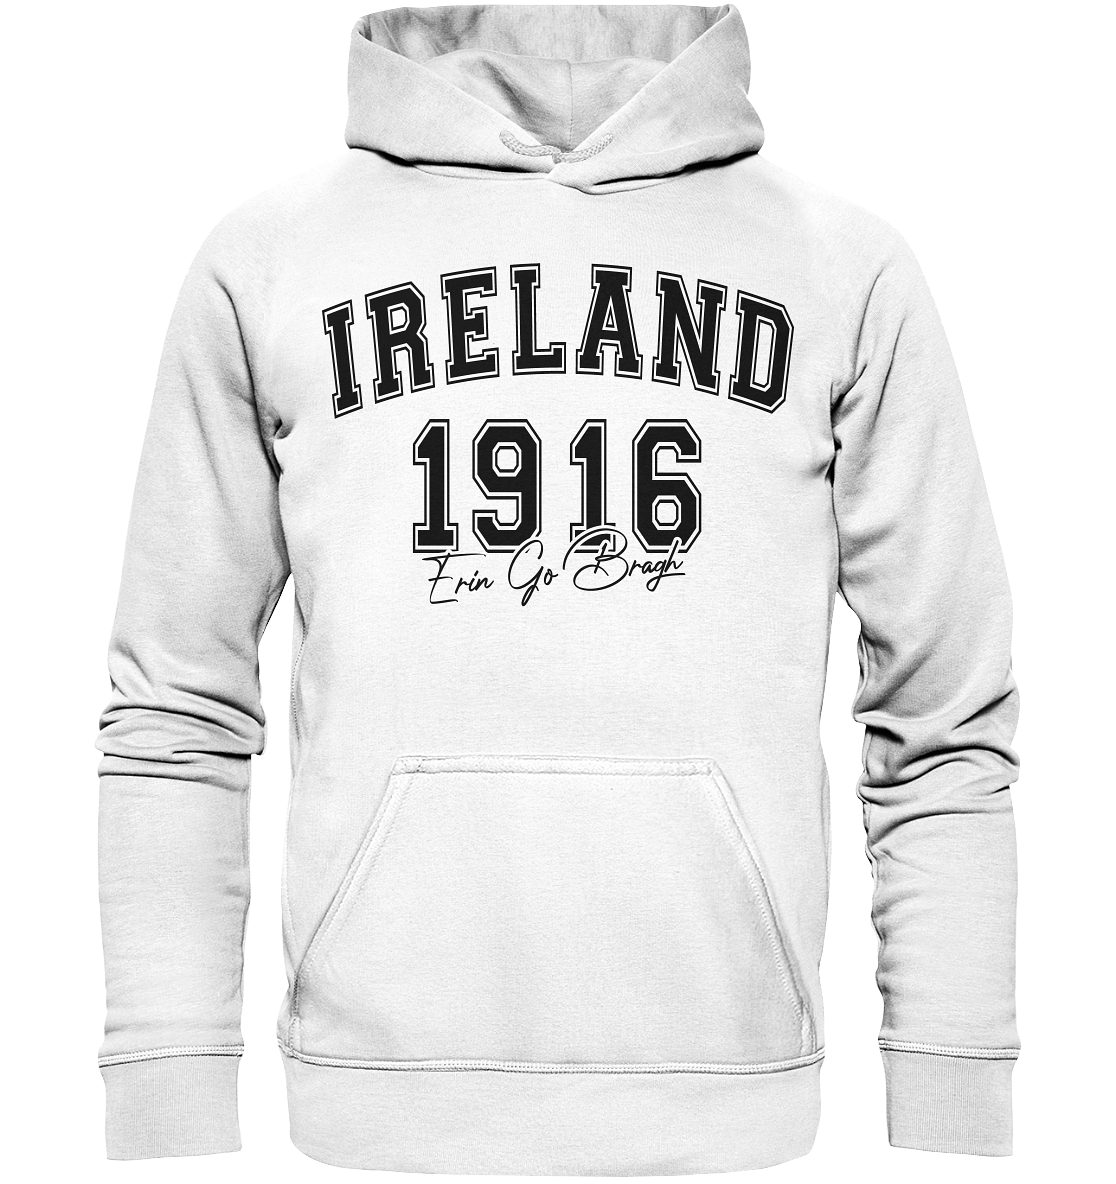 Ireland "1916 / Erin Go Bragh" - Basic Unisex Hoodie